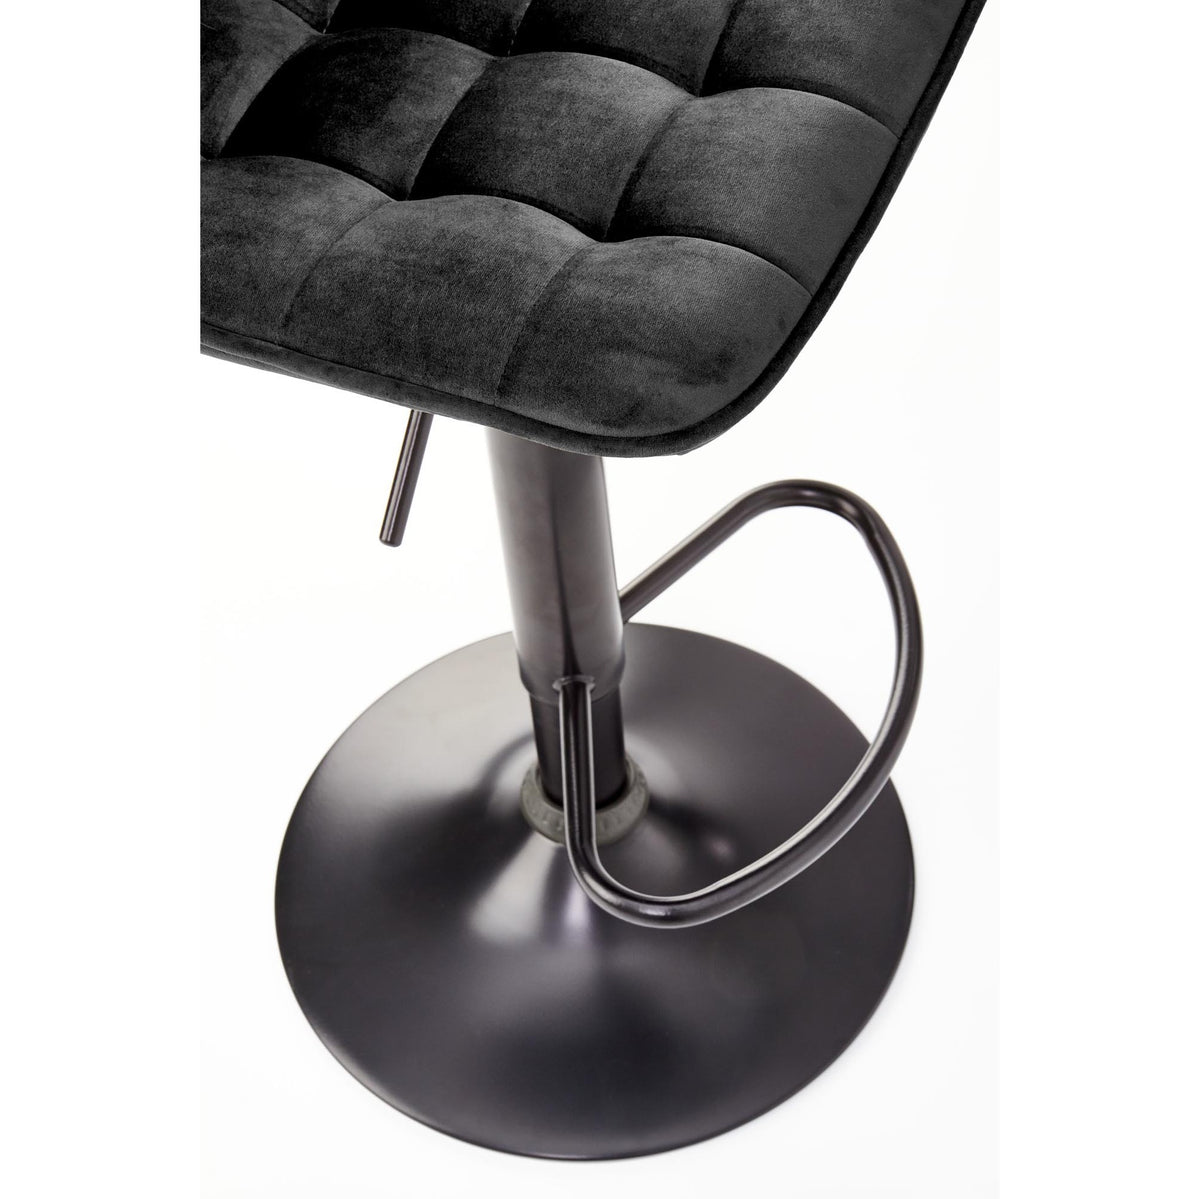 Barová židle Malibu černá